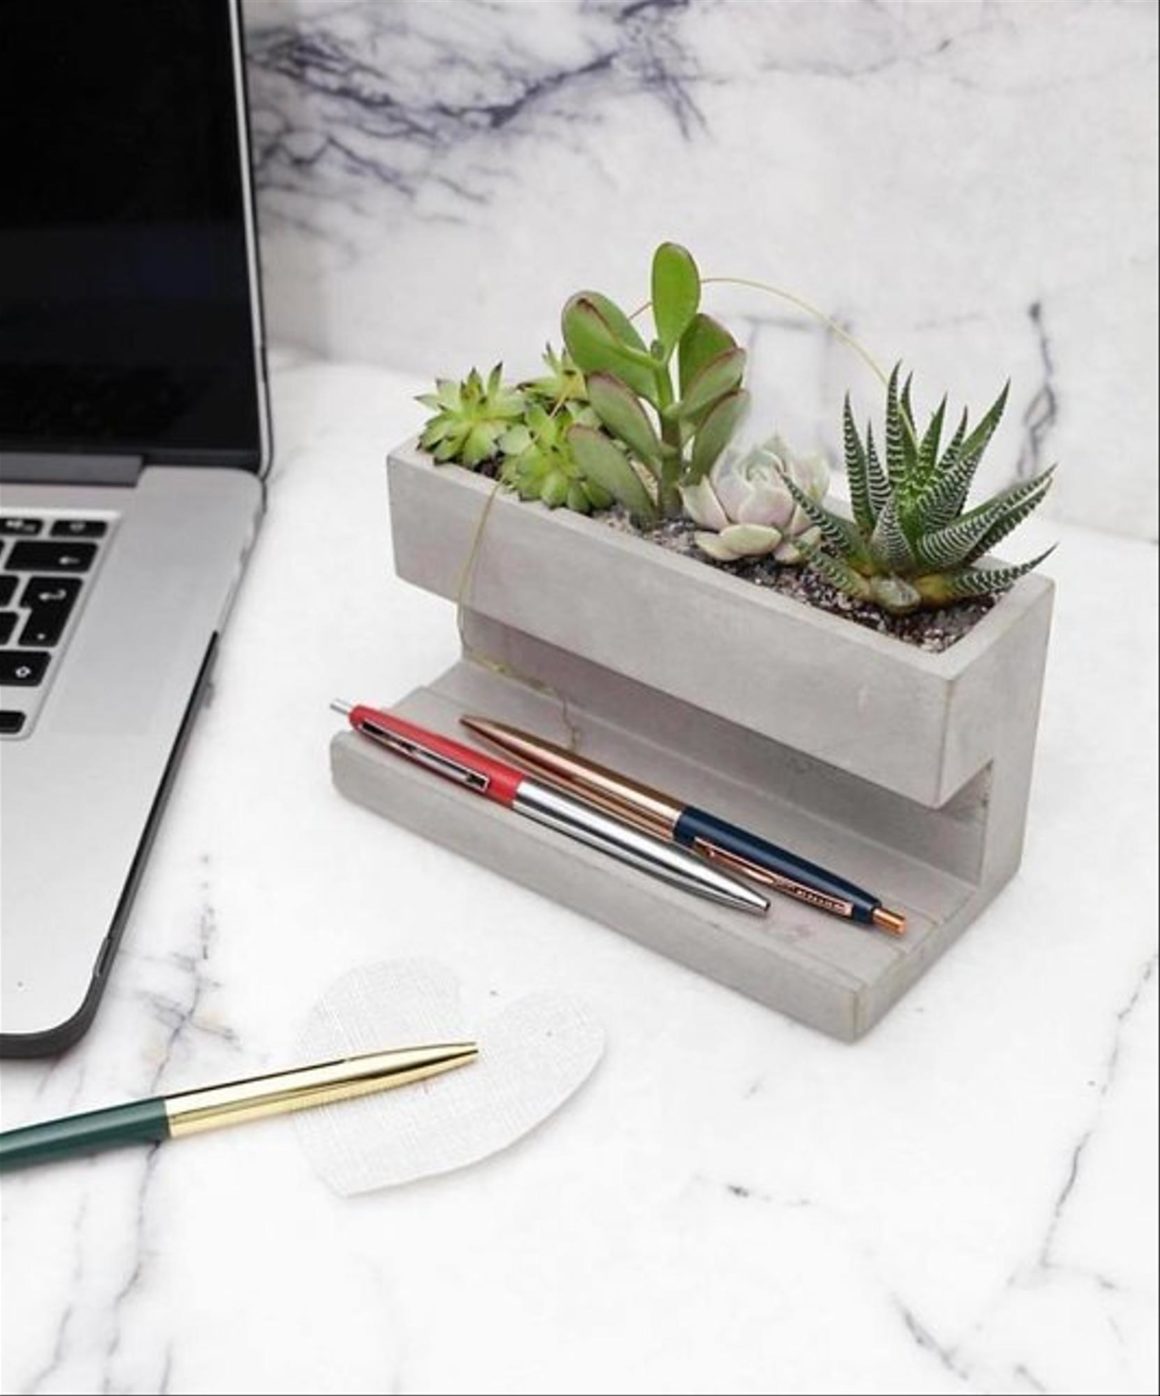 Desktop en béton pour poser les stylos qui sert aussi de petite jardinière à plante. Un objet en béton qui joint l'utile à l'agréable.